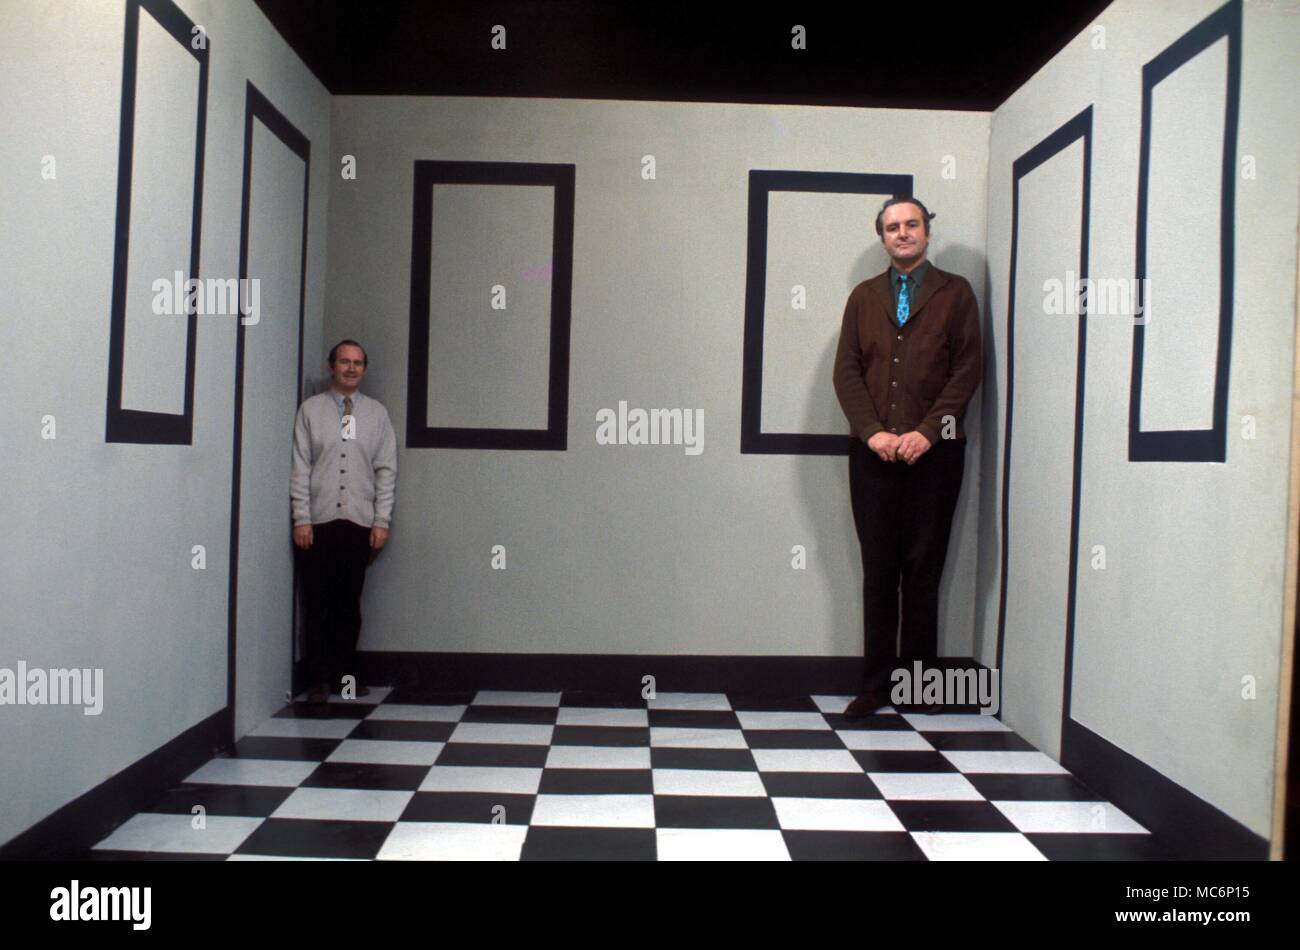 Las ilusiones. Dos hombres de la misma altura de pie en una sala de Ames diseñados para crear la ilusión óptica que cambia la altura relativa de los hombres. Foto de stock